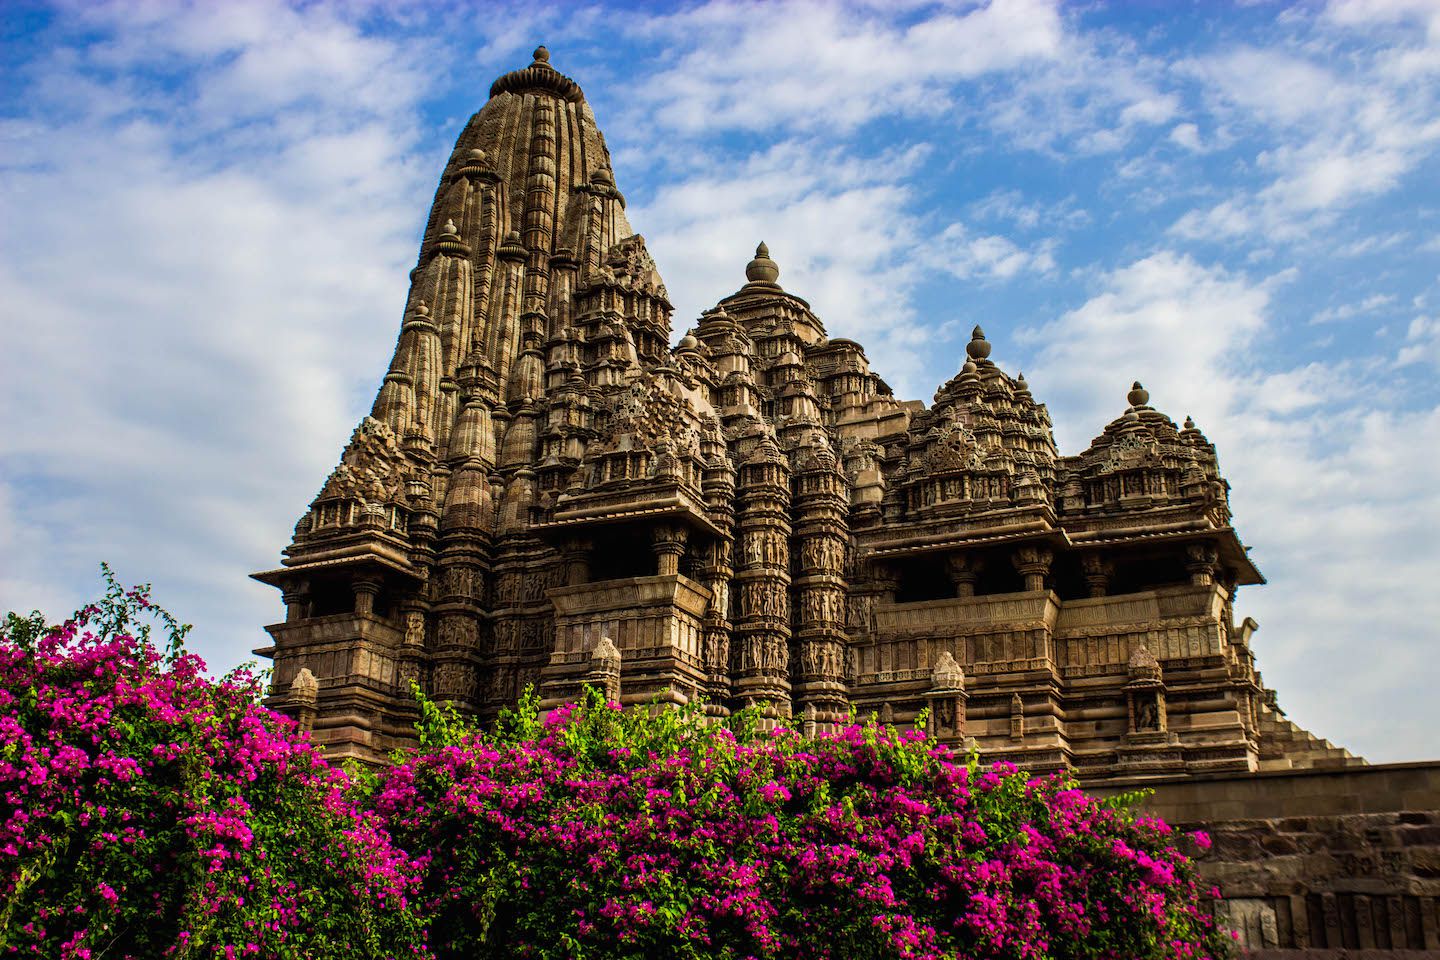 South view of Kanradiya-Mahadev temple, Khajuraho, India